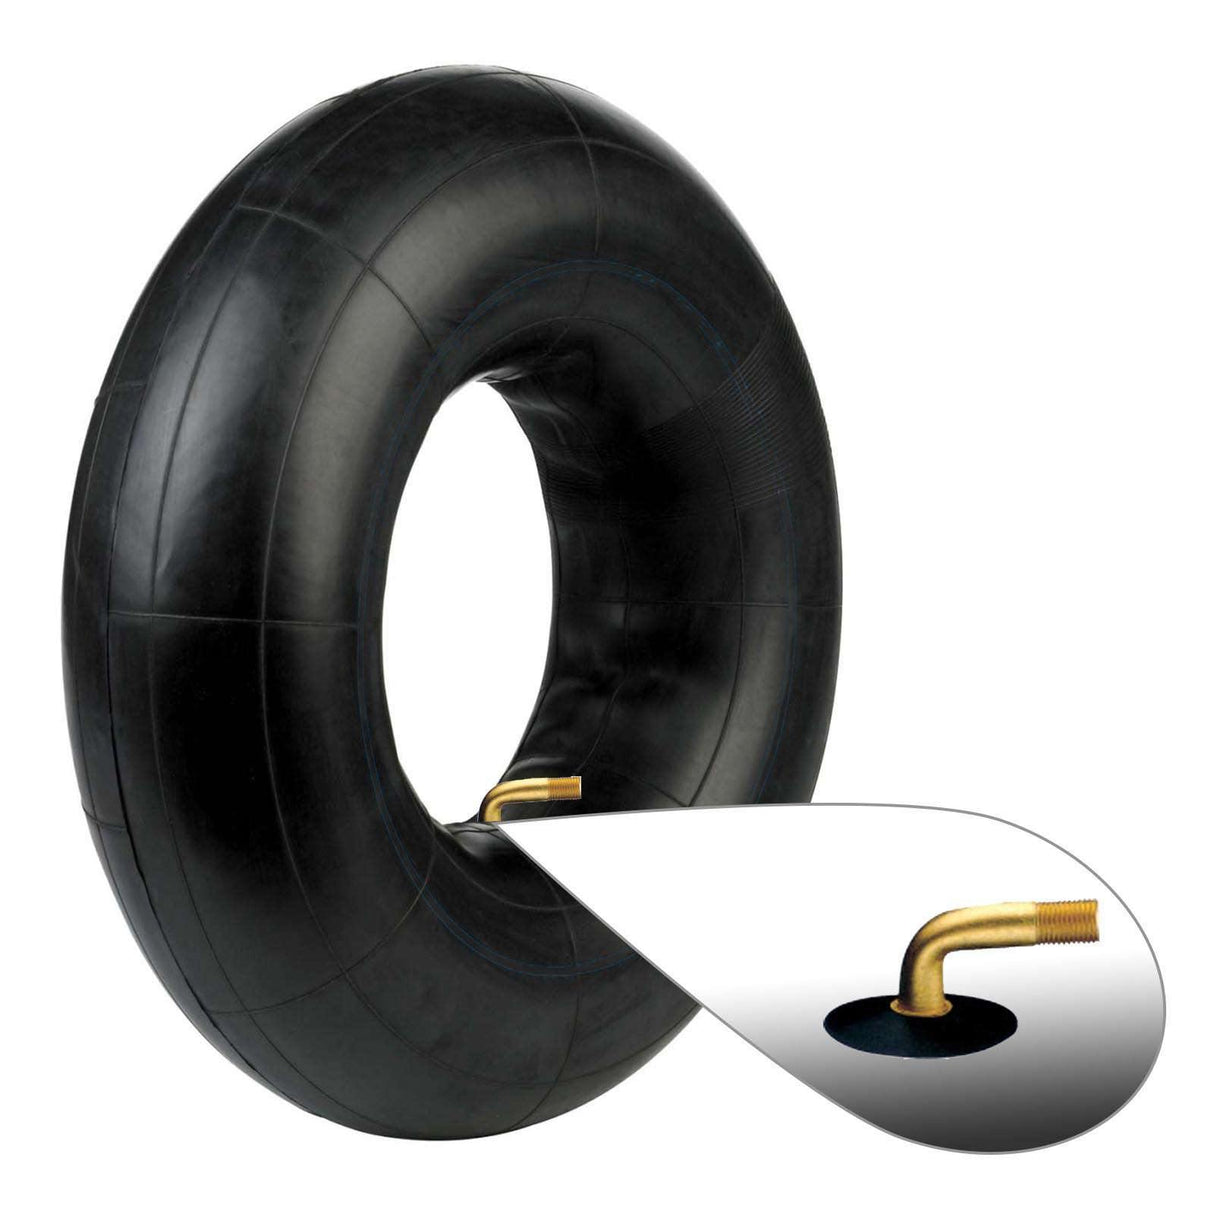 3.00-4 2.80-4 2.50-4 Major Brand Tire Inner Tube TR87 Metal Valve